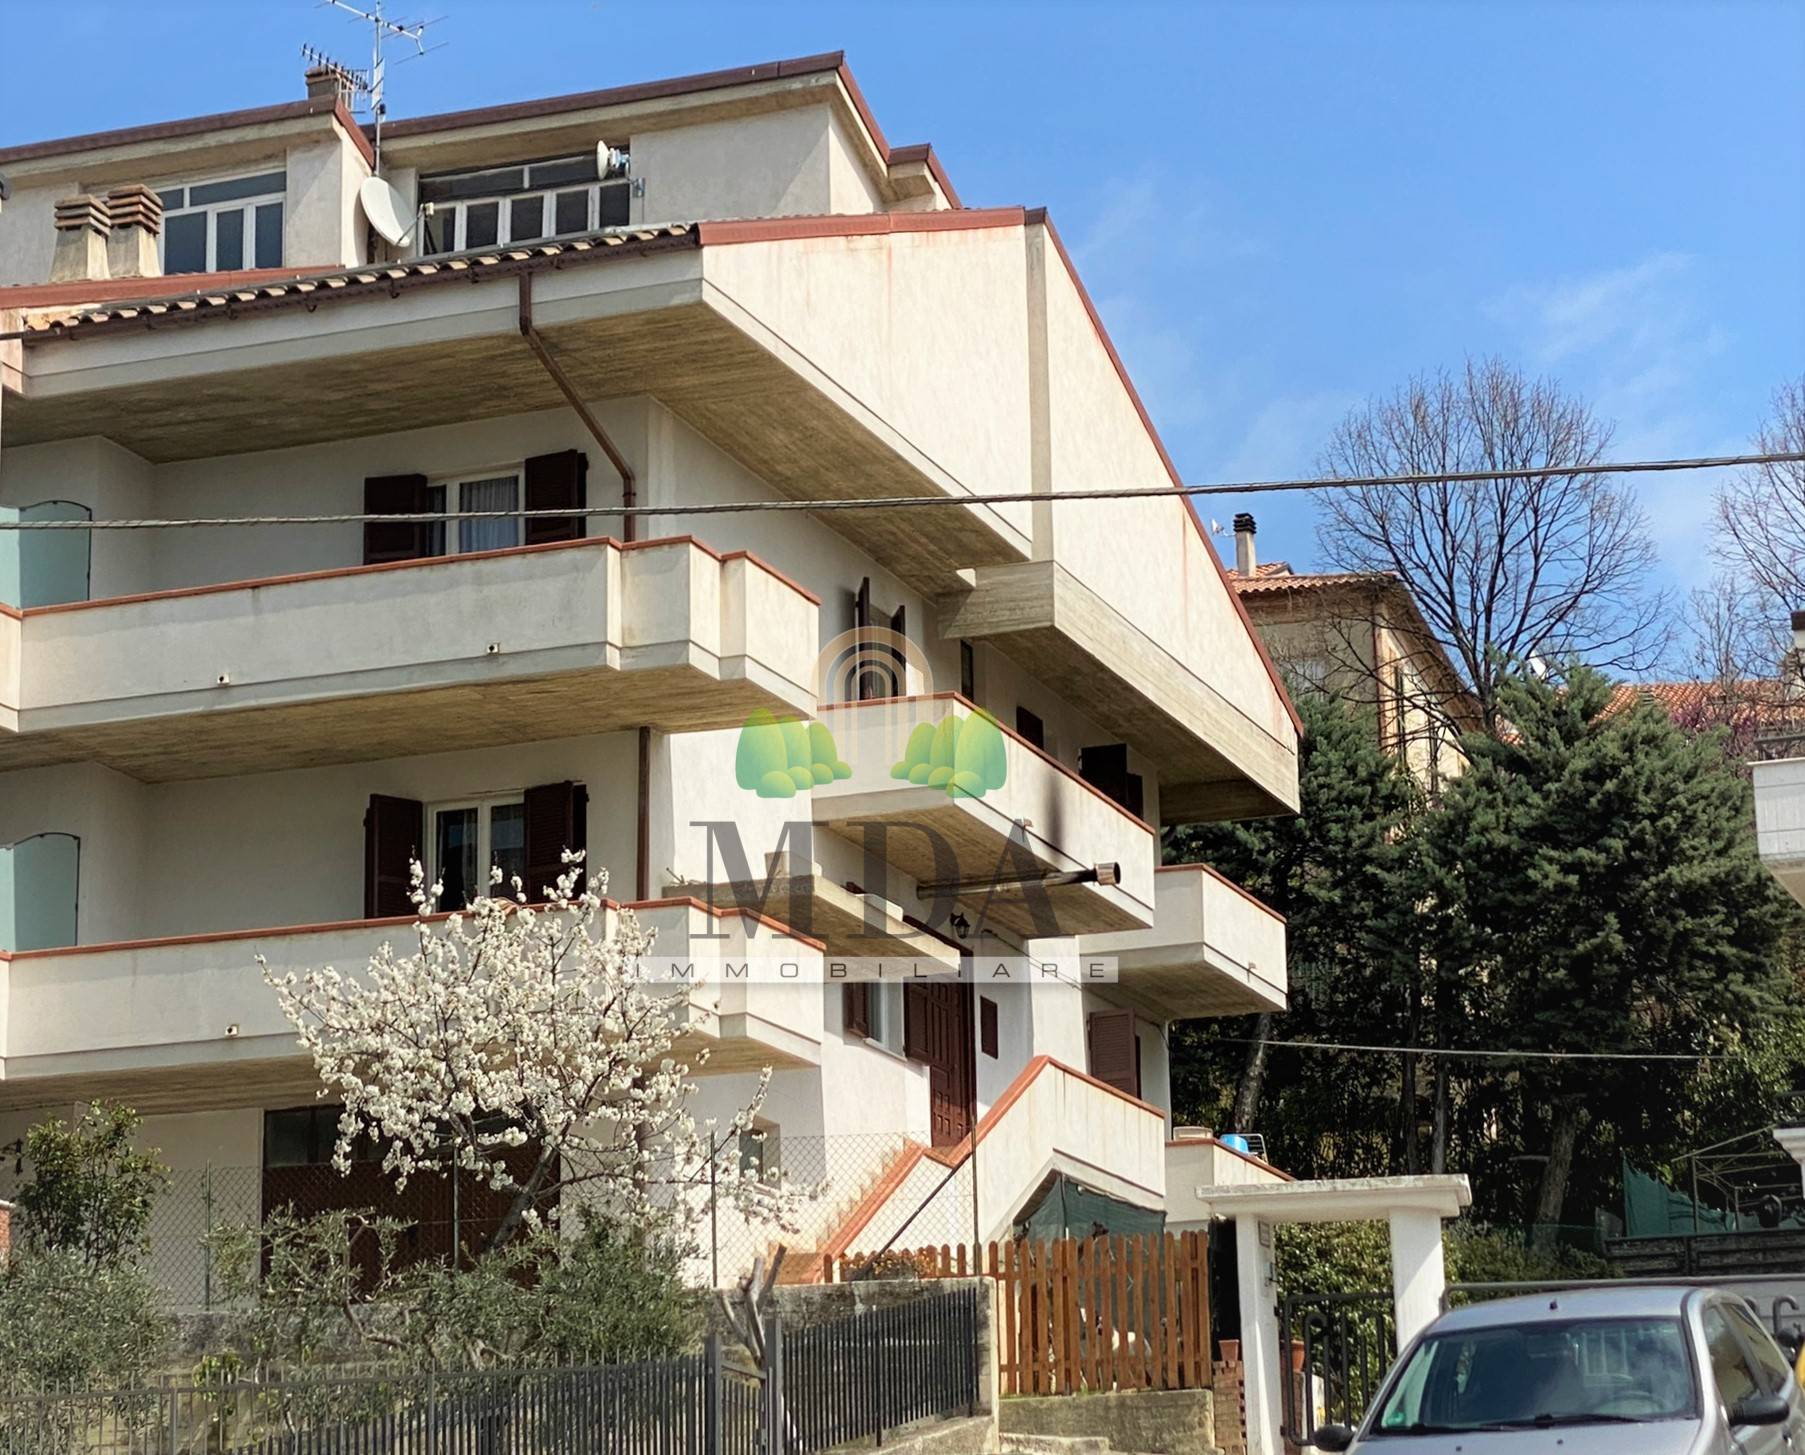 Villa a Schiera in vendita a Torano Nuovo, 6 locali, prezzo € 128.000 | PortaleAgenzieImmobiliari.it